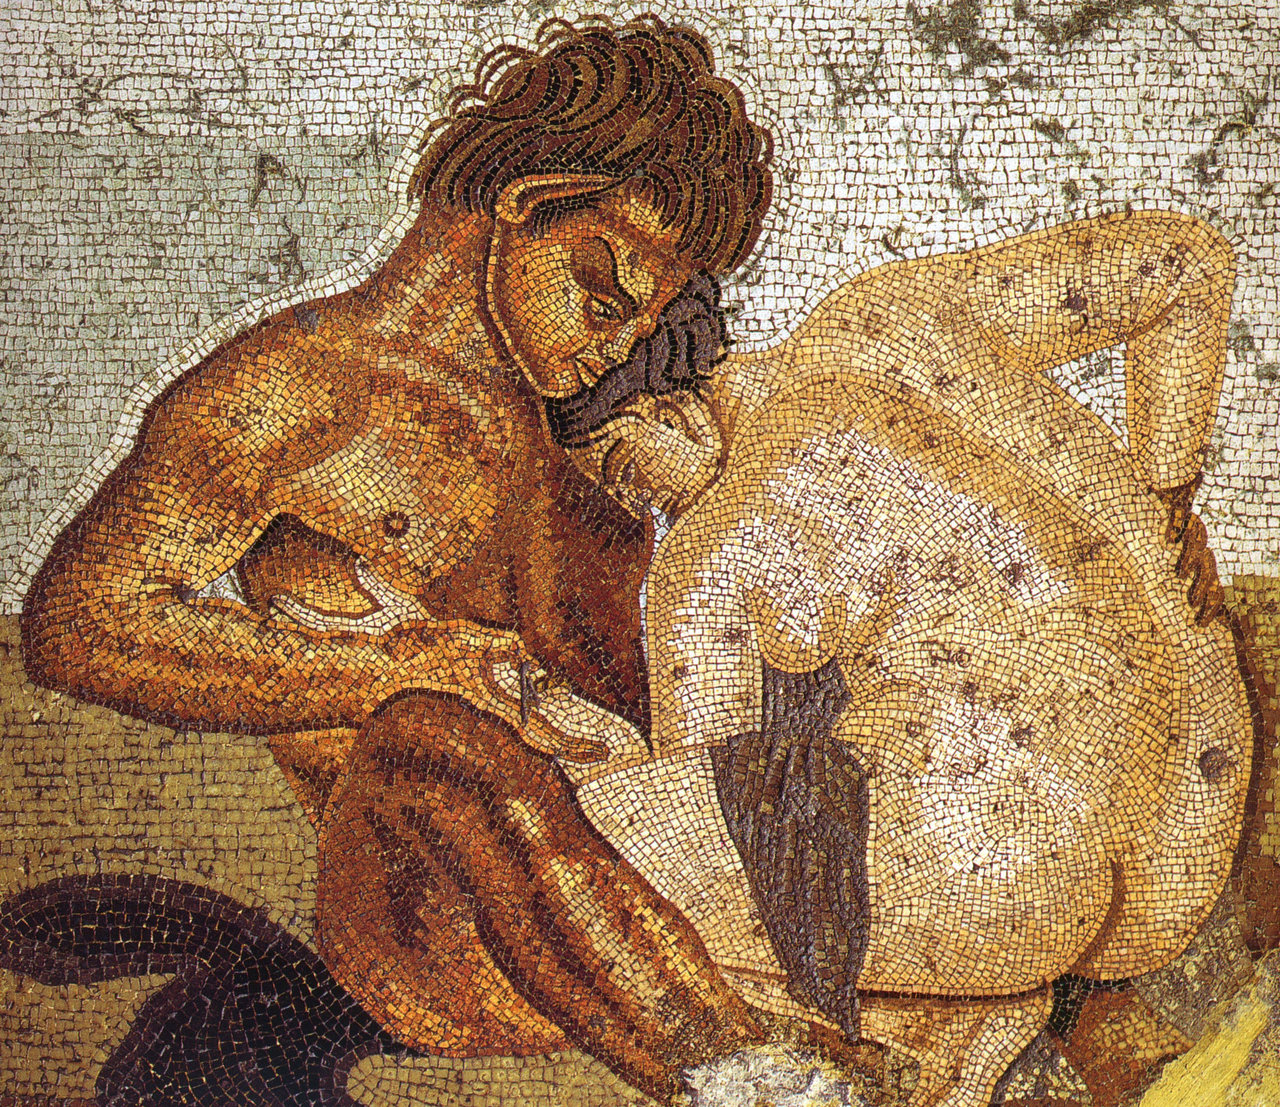 Как работала проституция в Древнем Египте, Риме и Вавилоне